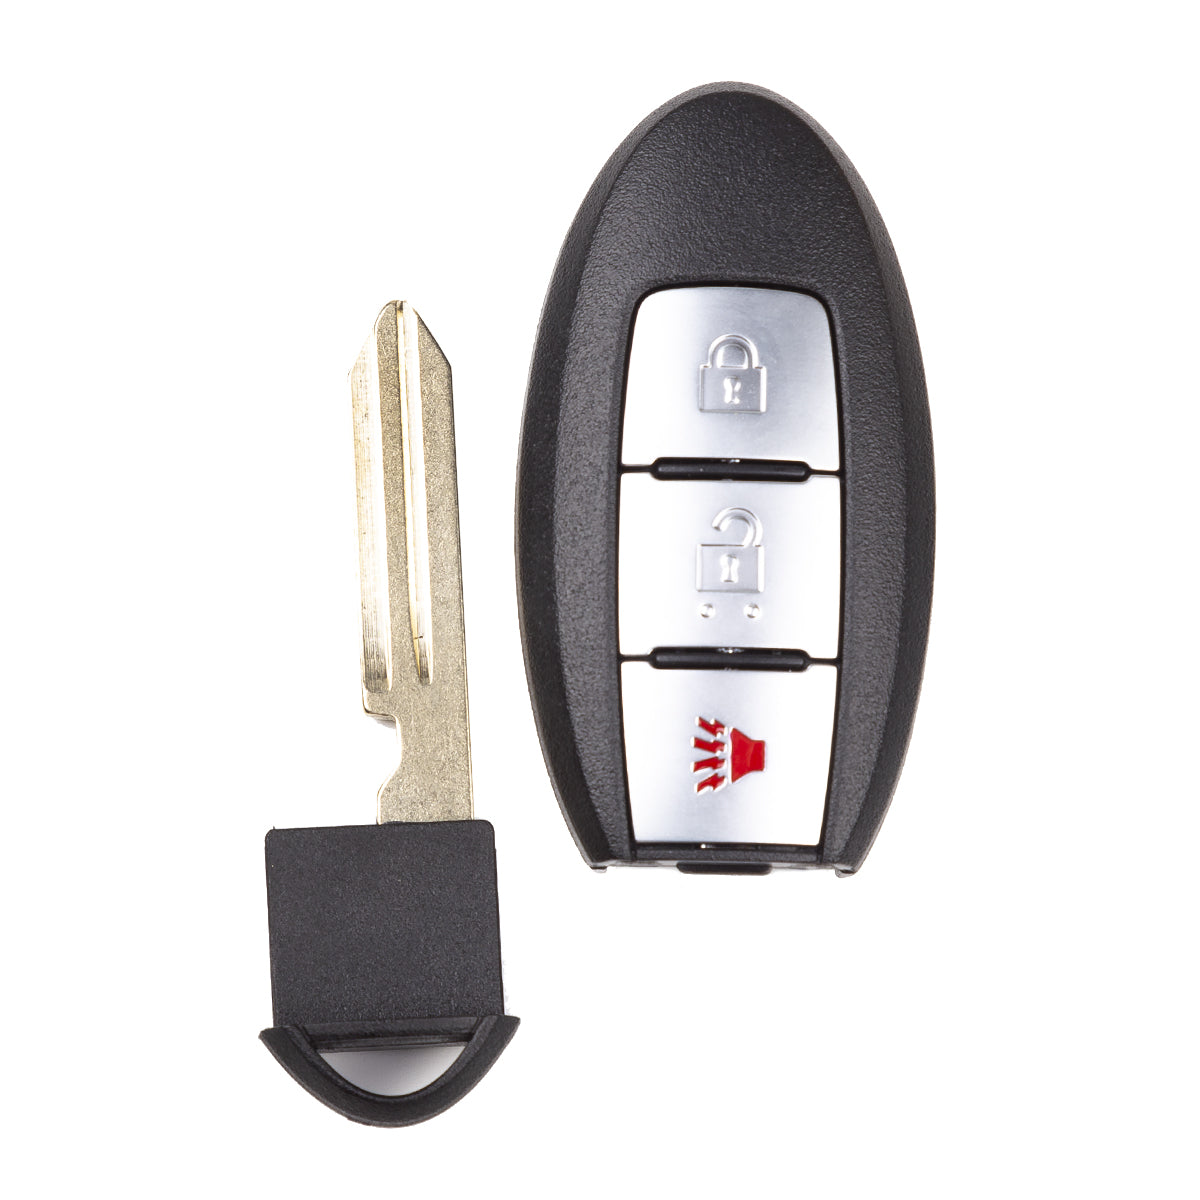 2014 Nissan Juke Smart Key 3 Buttons Fob FCC# CWTWB1U808 - Aftermarket